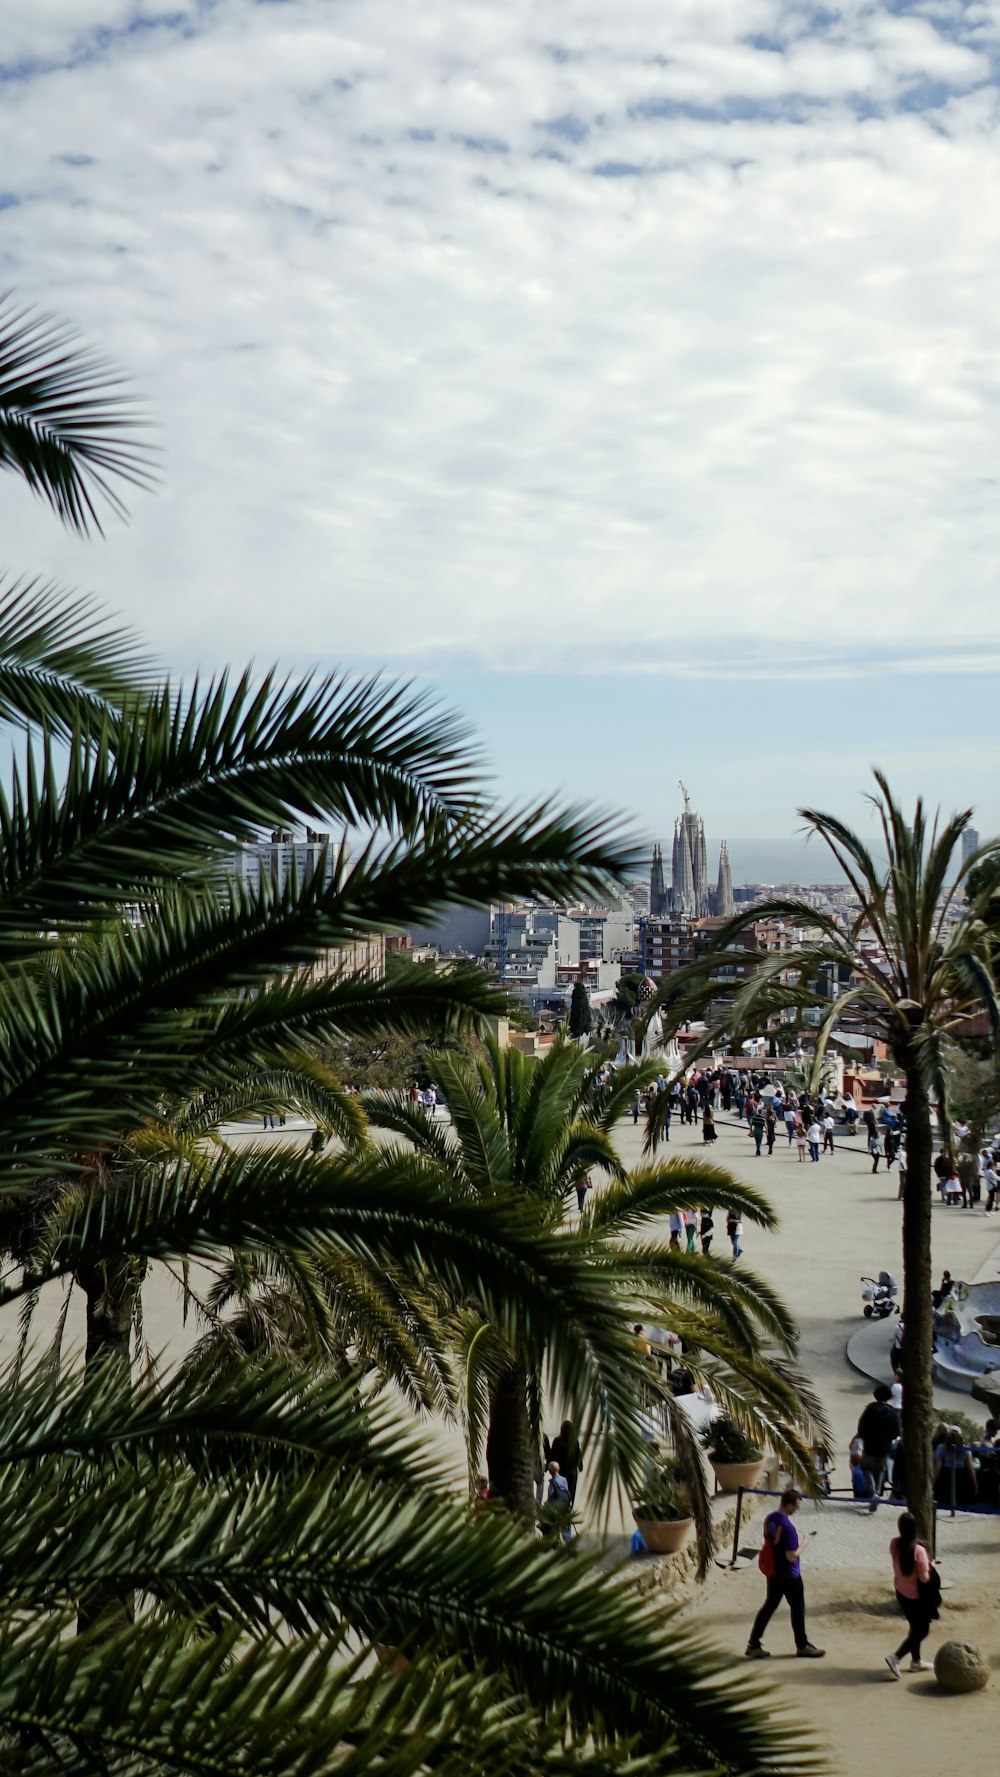 eine Gruppe von Menschen, die an einem Strand neben Palmen spazieren gehen